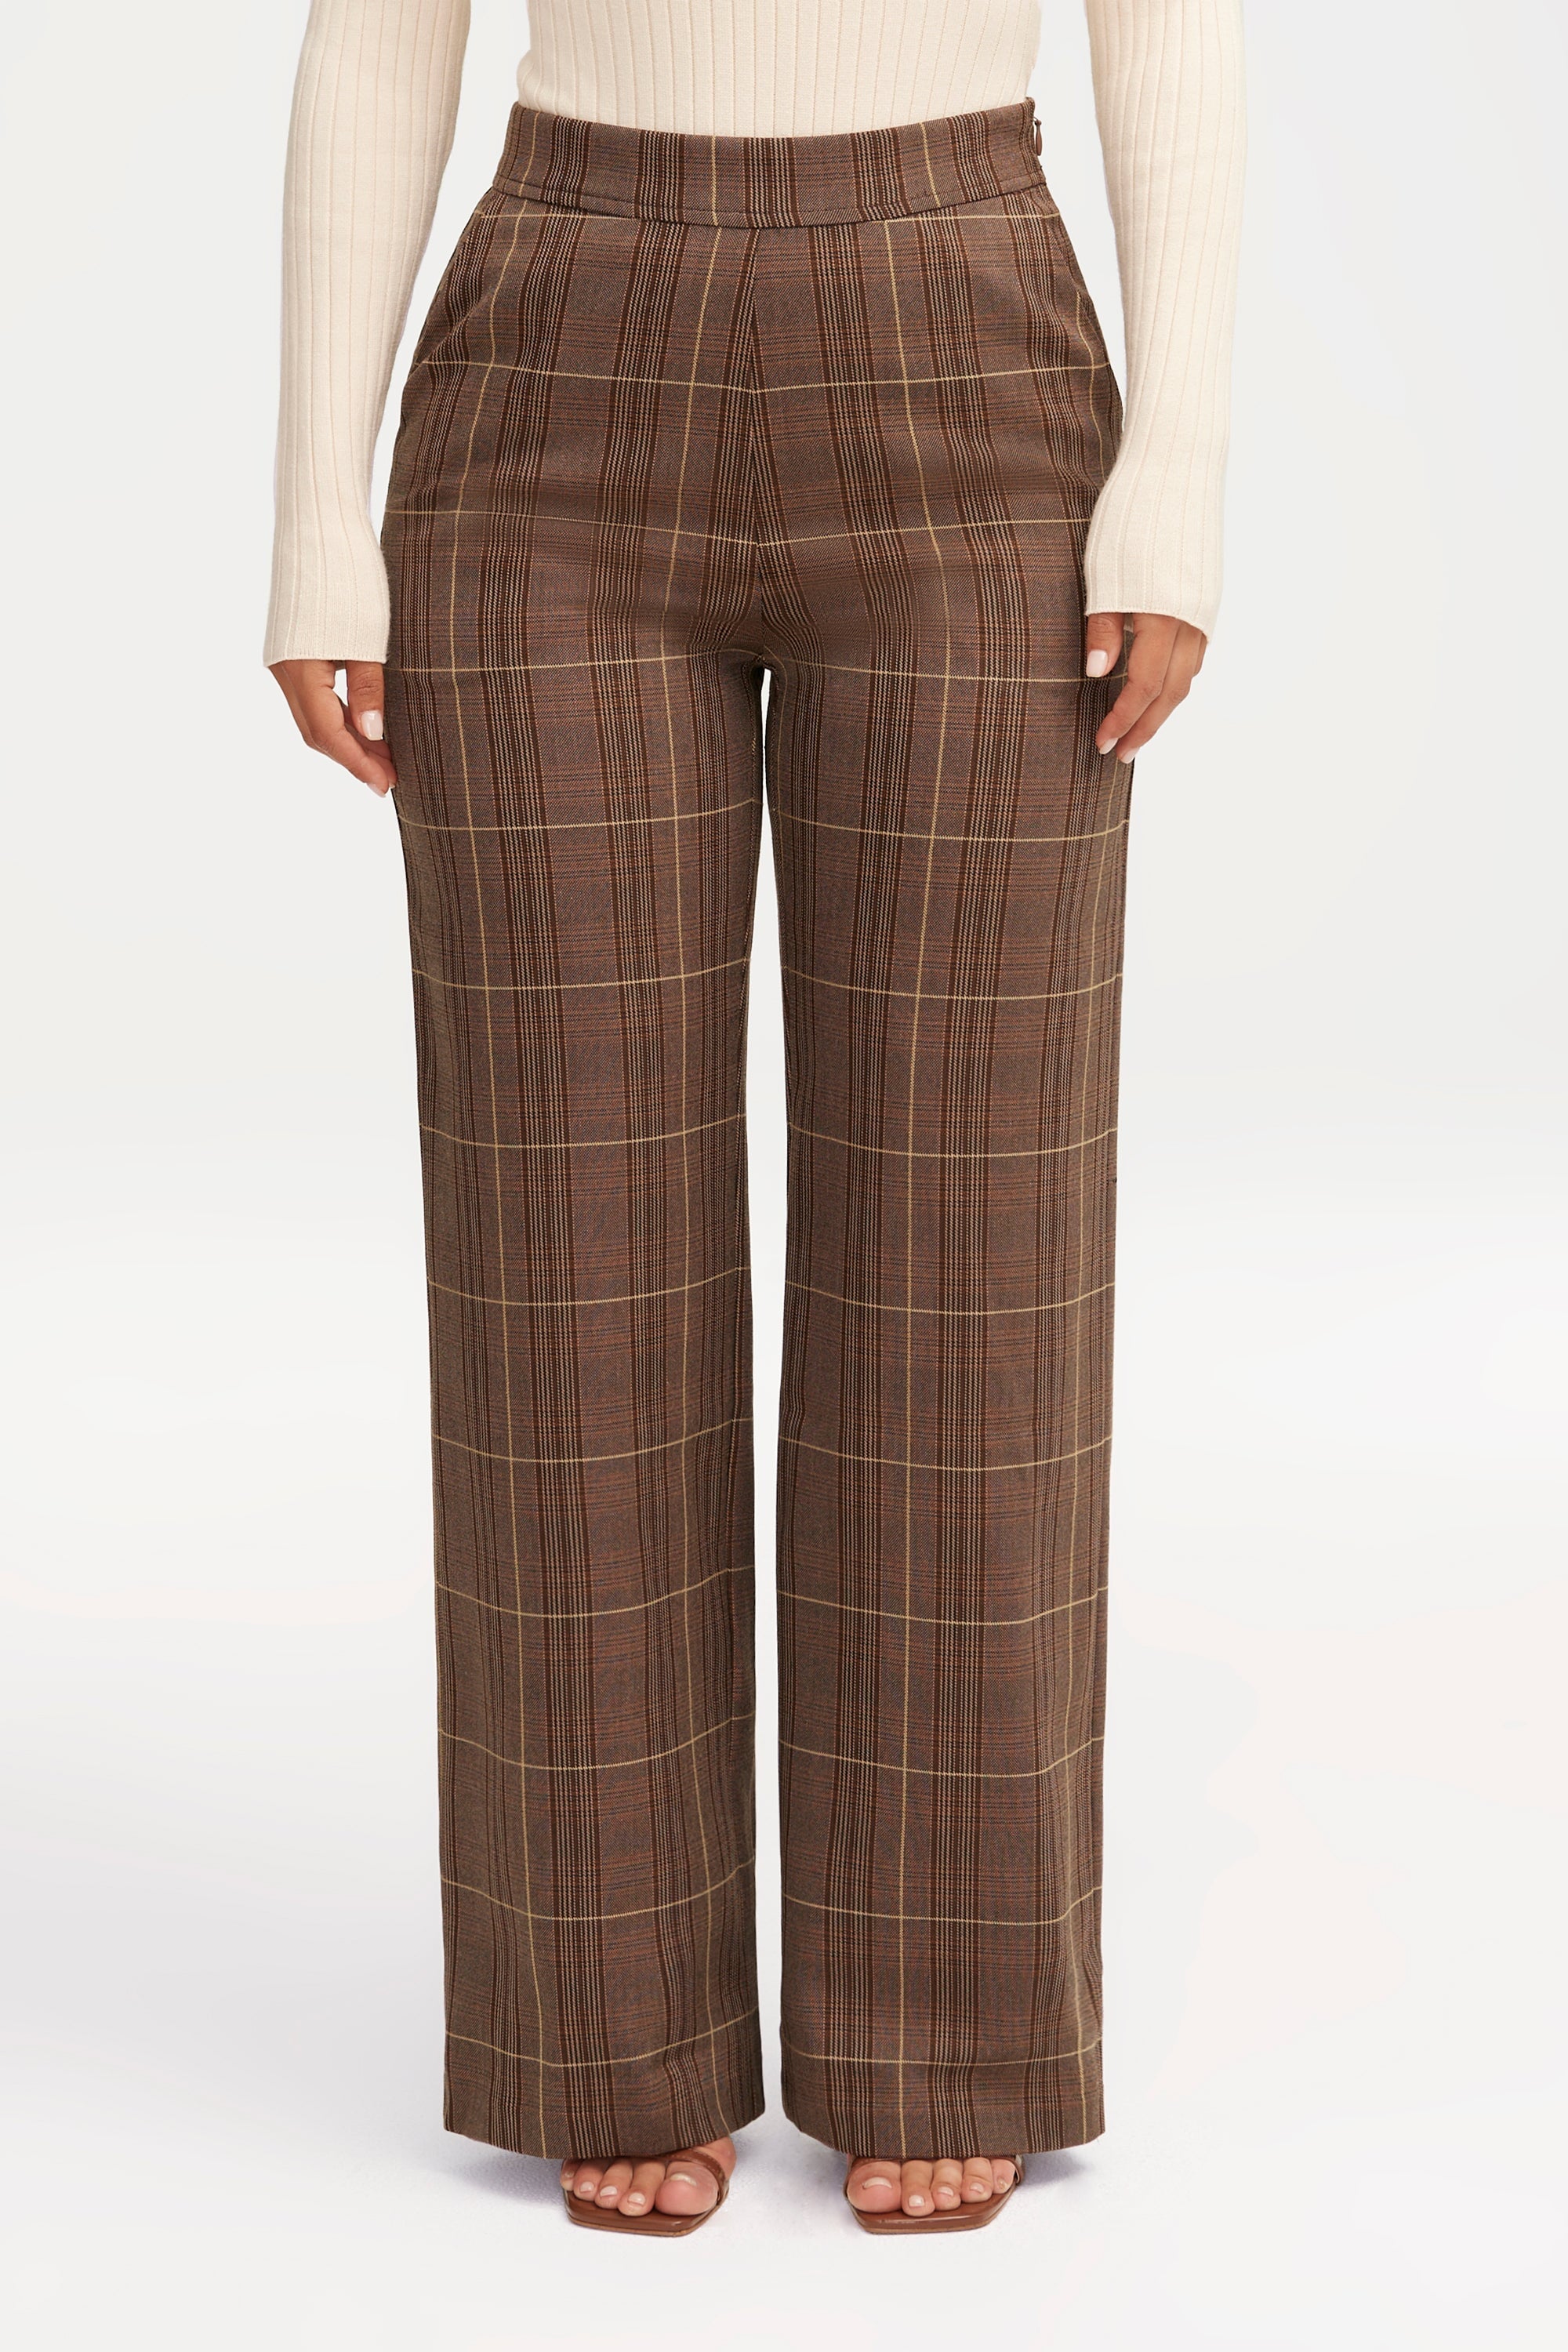 High Waist Women's Brown Plaid Pants Streetwear Oversize Wide Leg